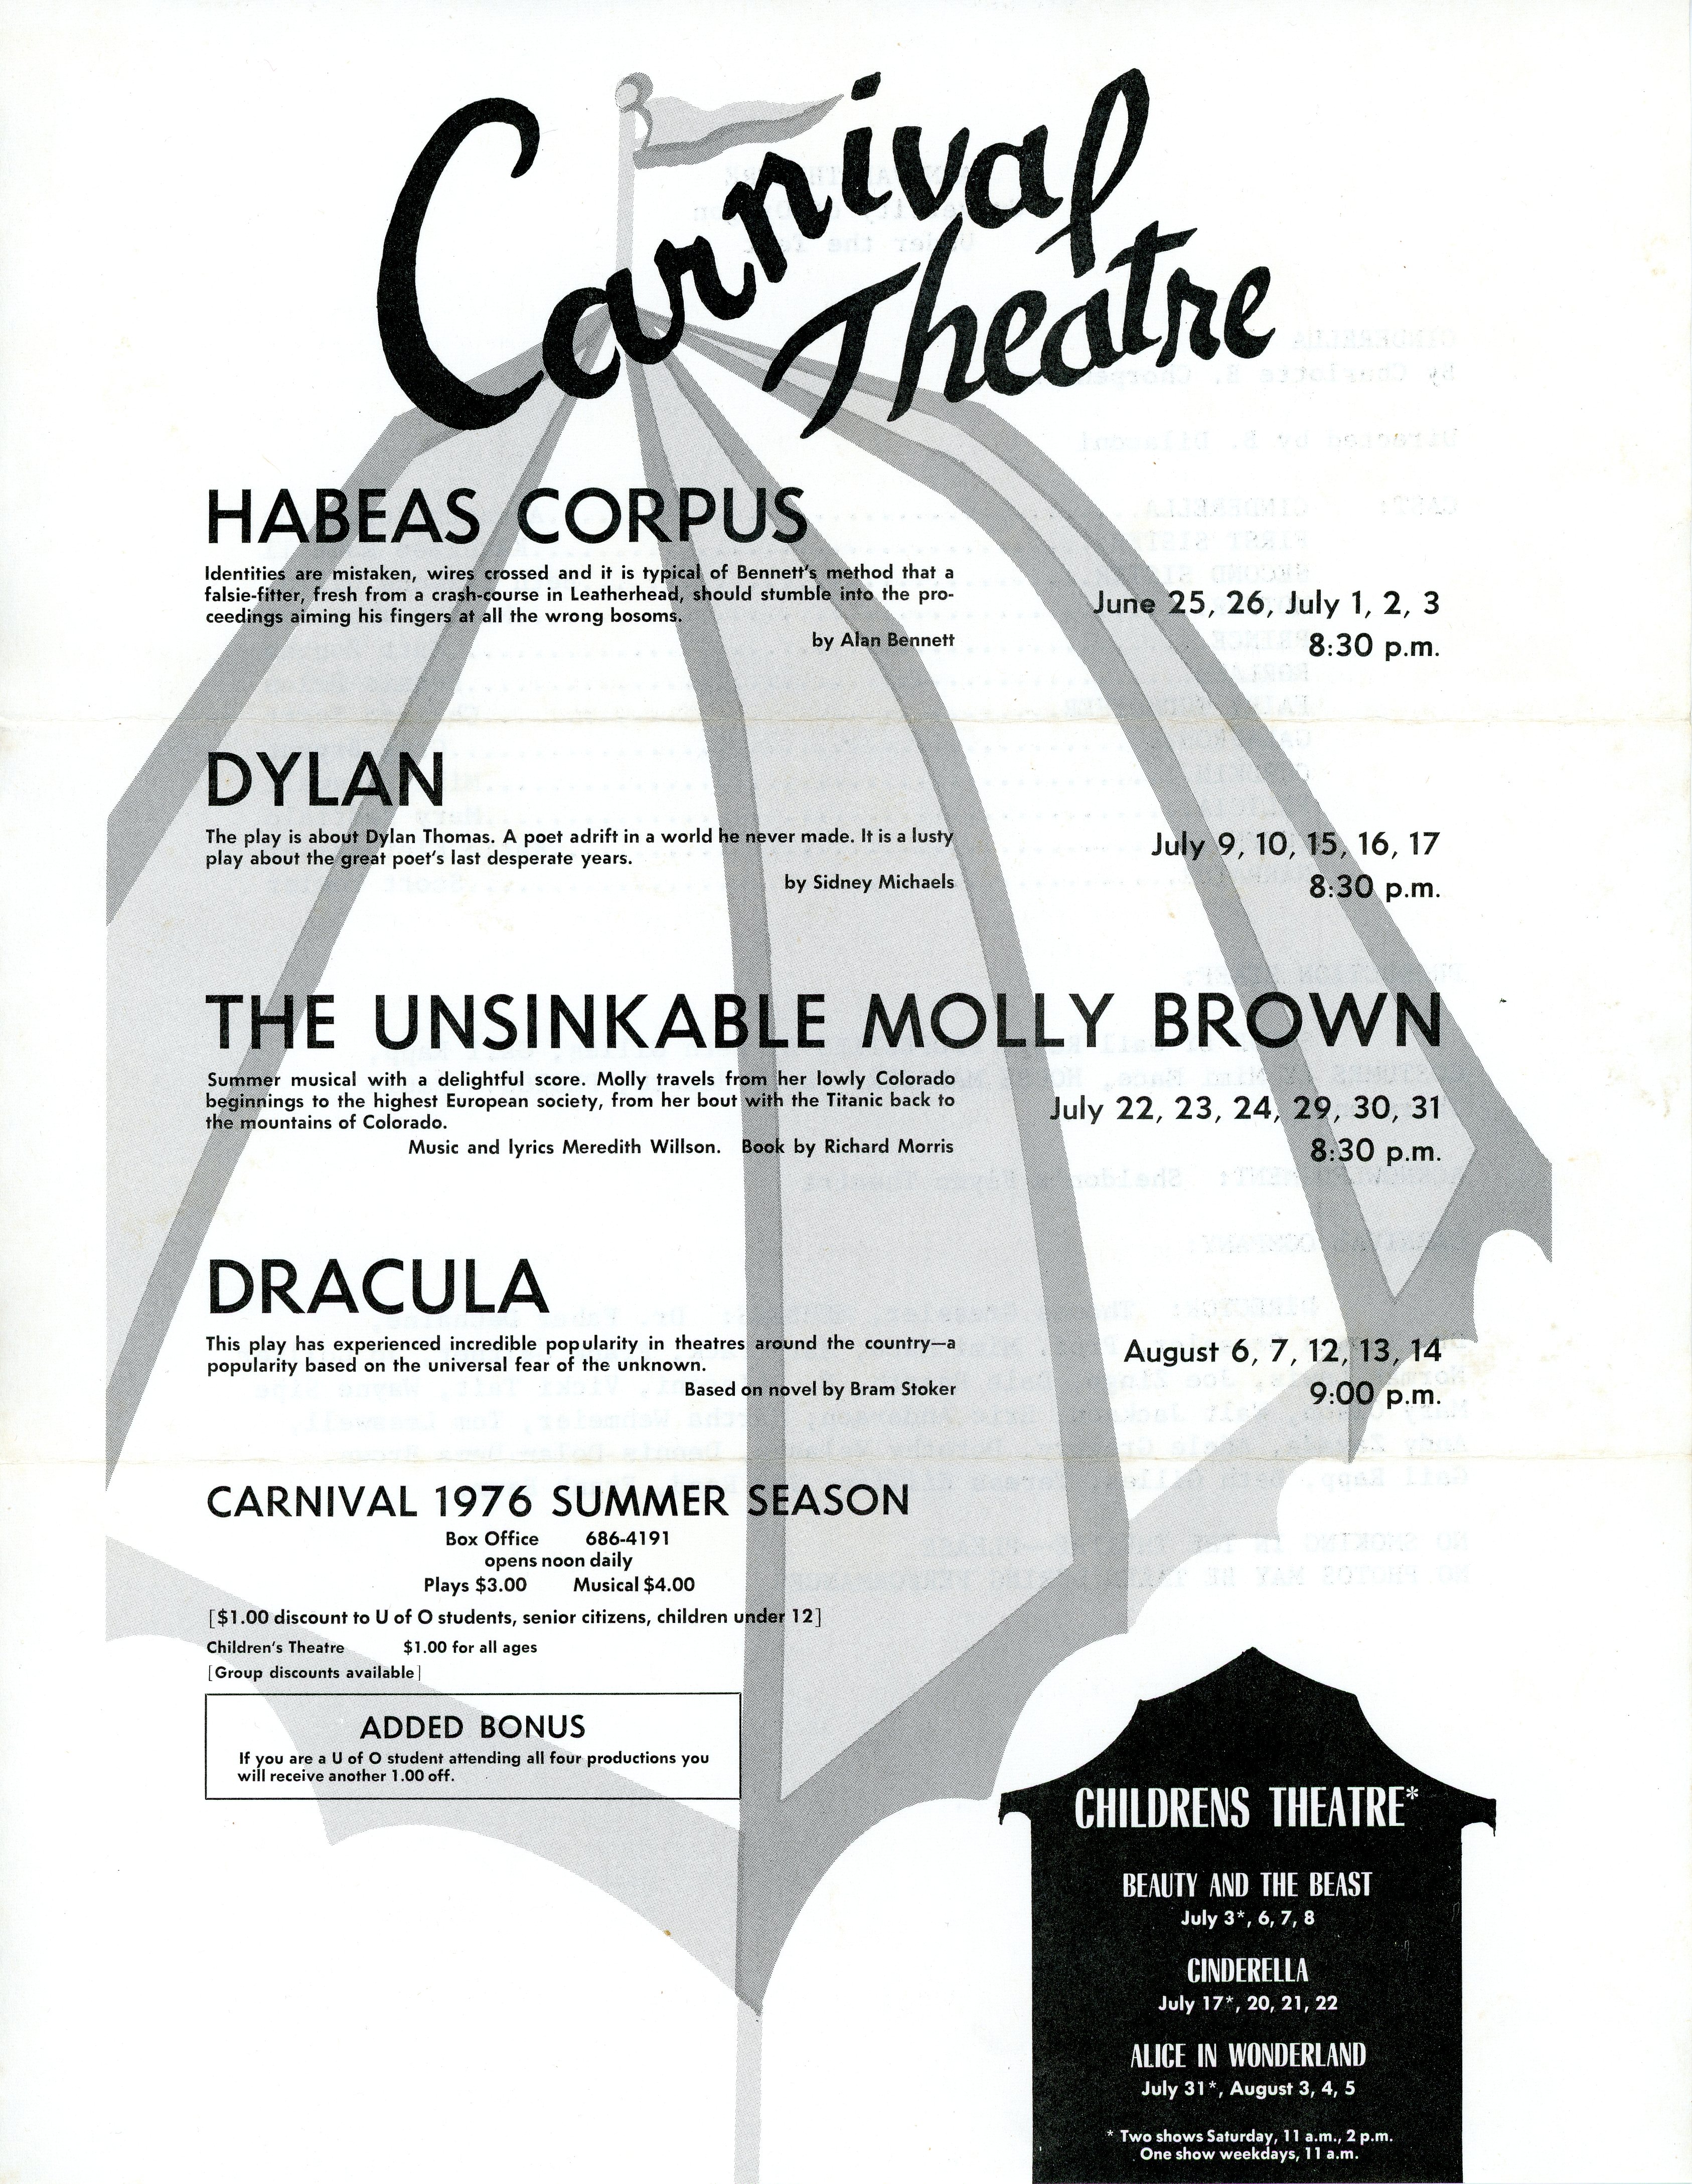 Canival Theatre - Cinderella